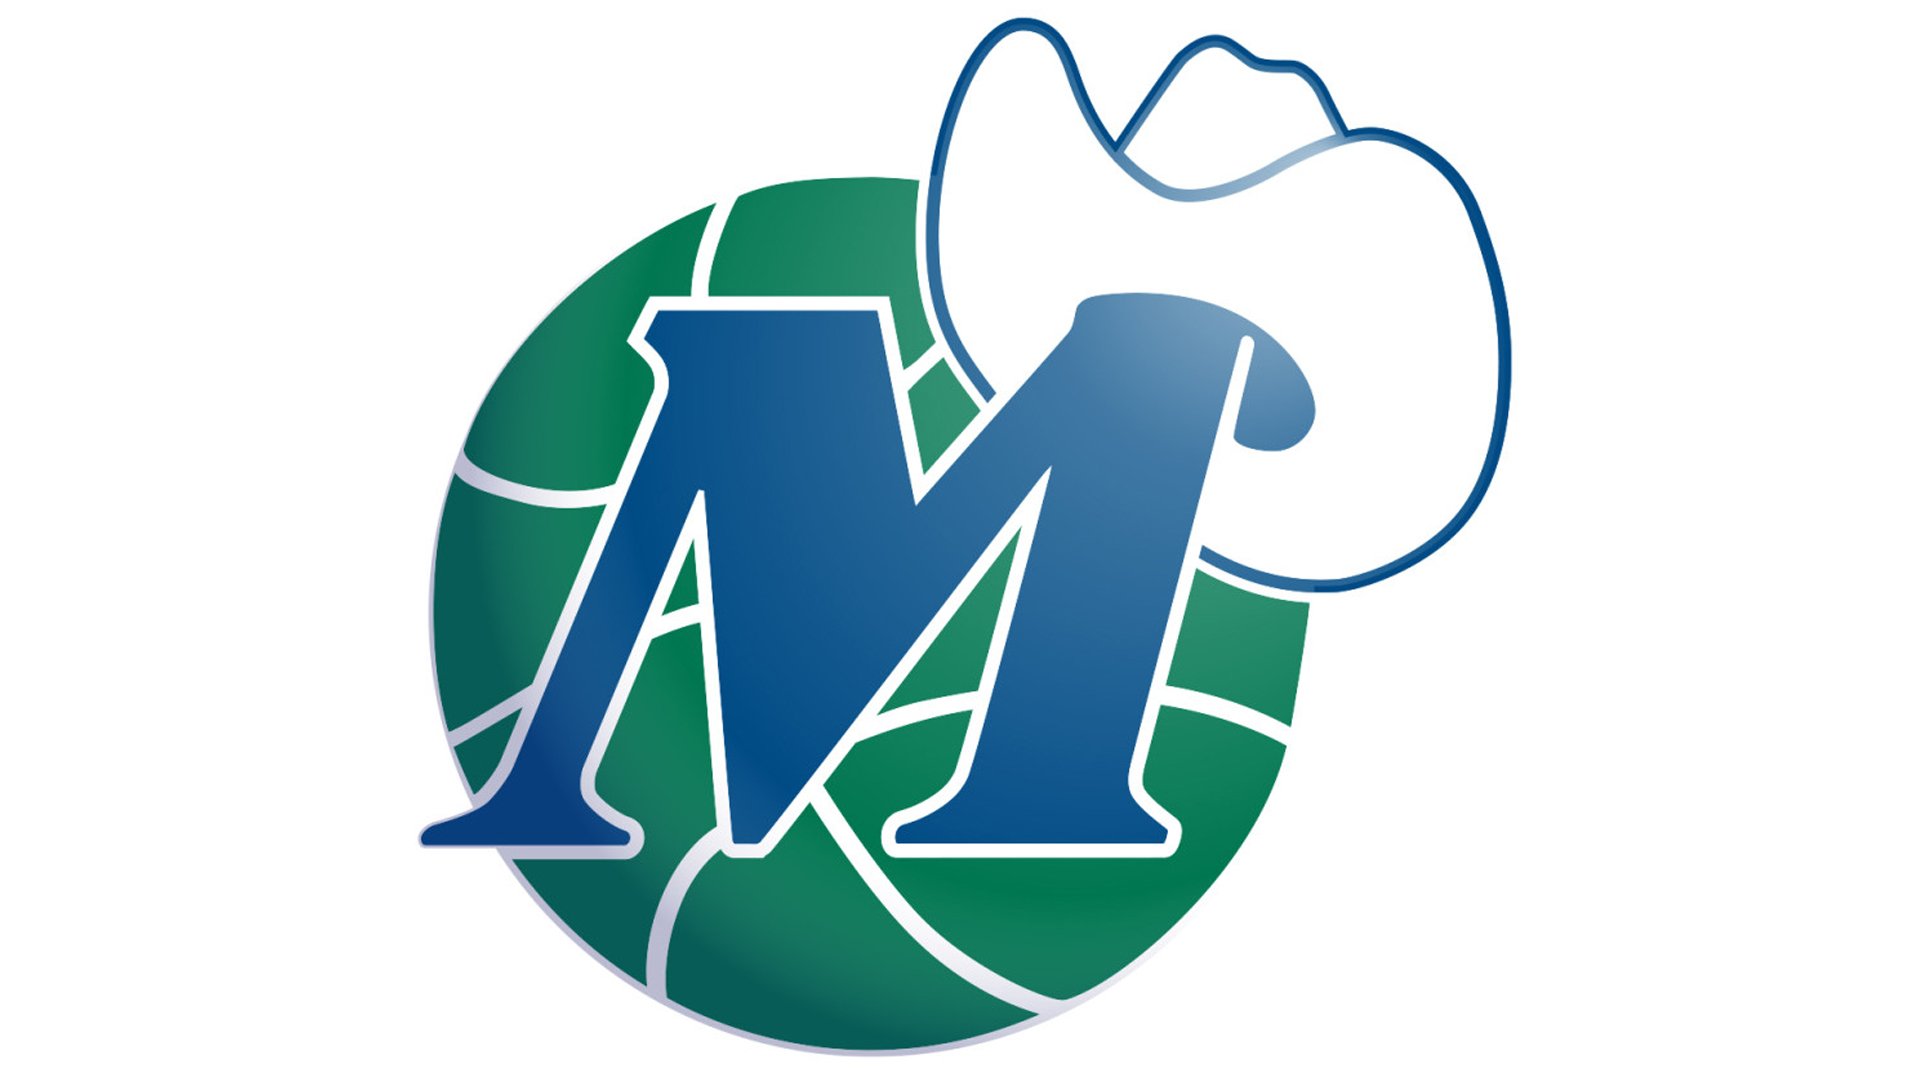 Dallas Mavericks logo and symbol, meaning, history, PNG